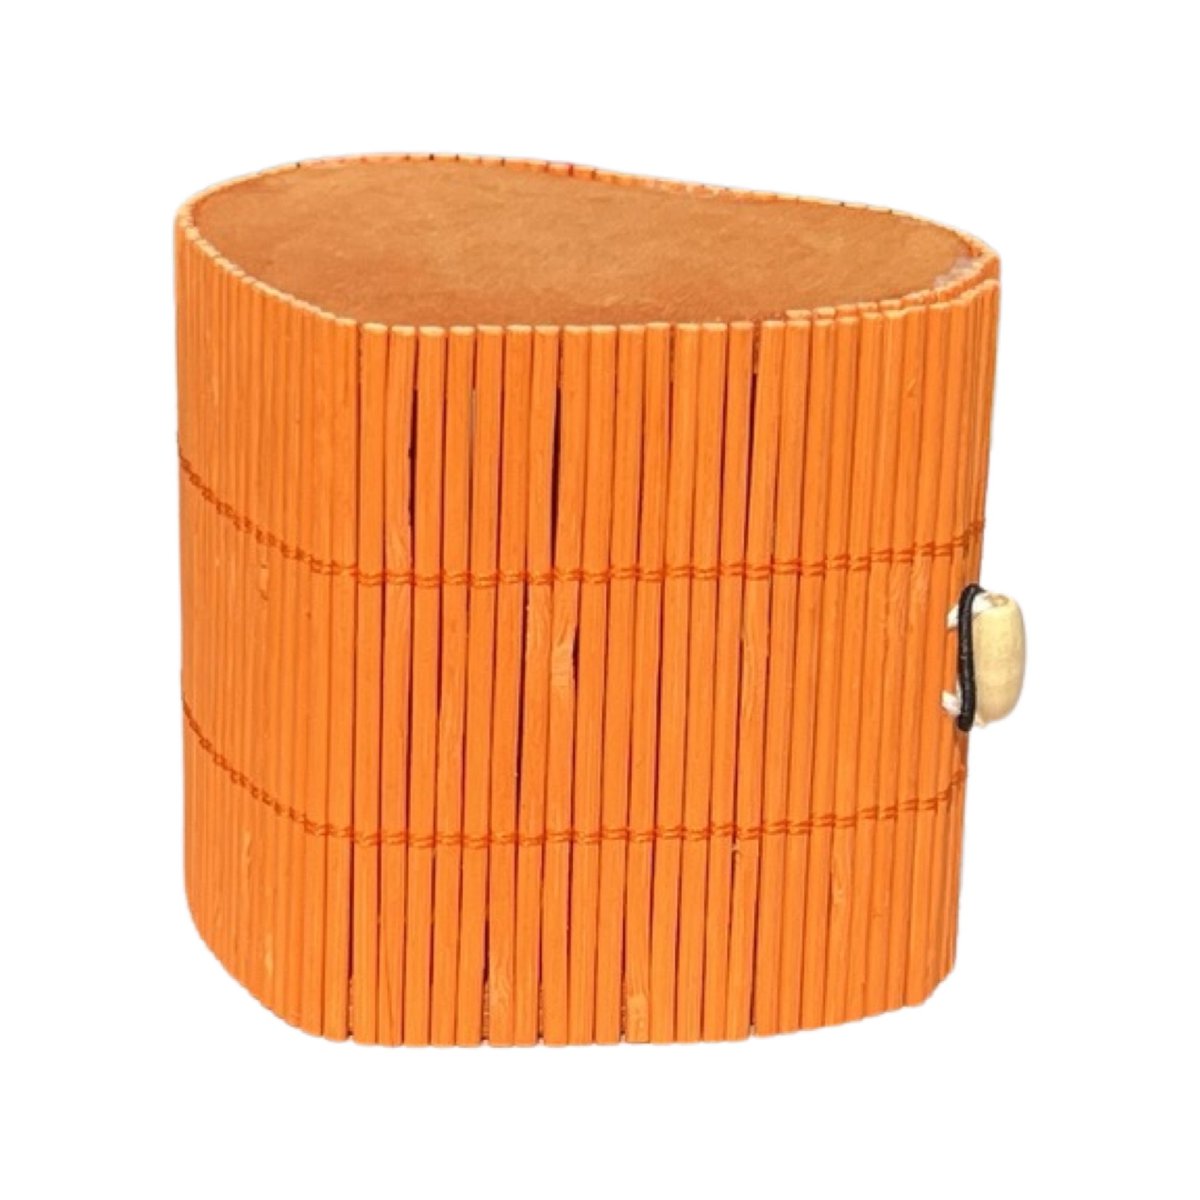 Cutie din bete de bambus inima portocalie 70mm